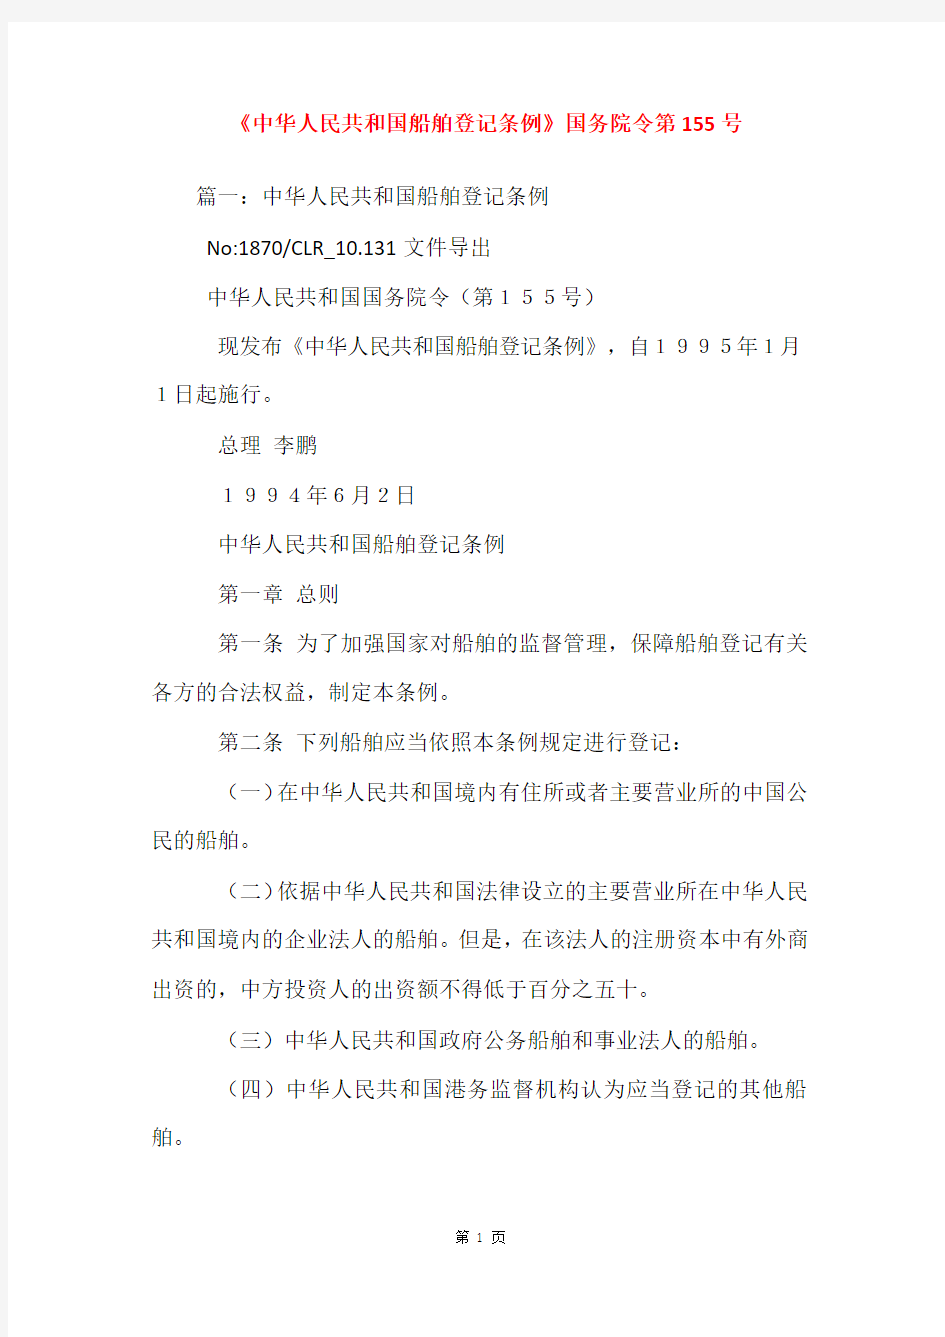 《中华人民共和国船舶登记条例》国务院令第155号